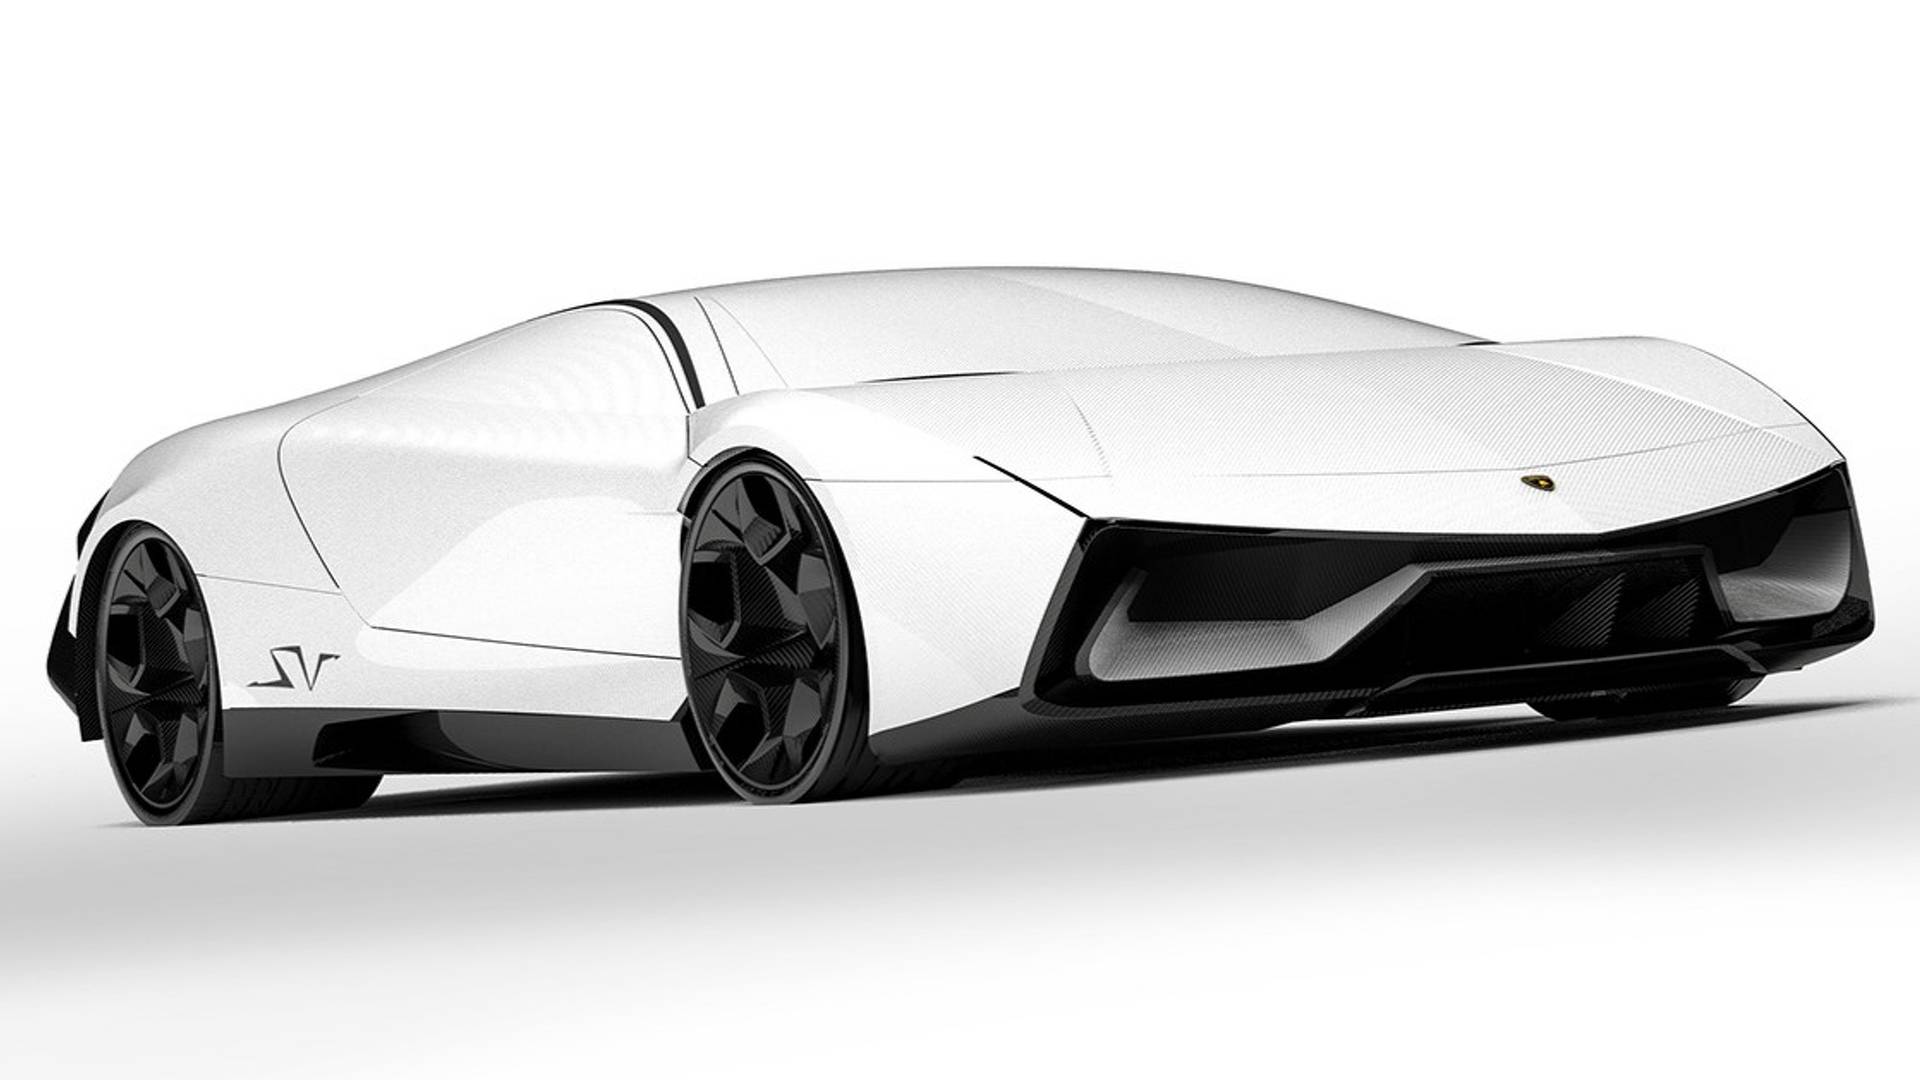 Lamborghini Pura SV Is A Sleek, Stunning Look At Lambo's Future